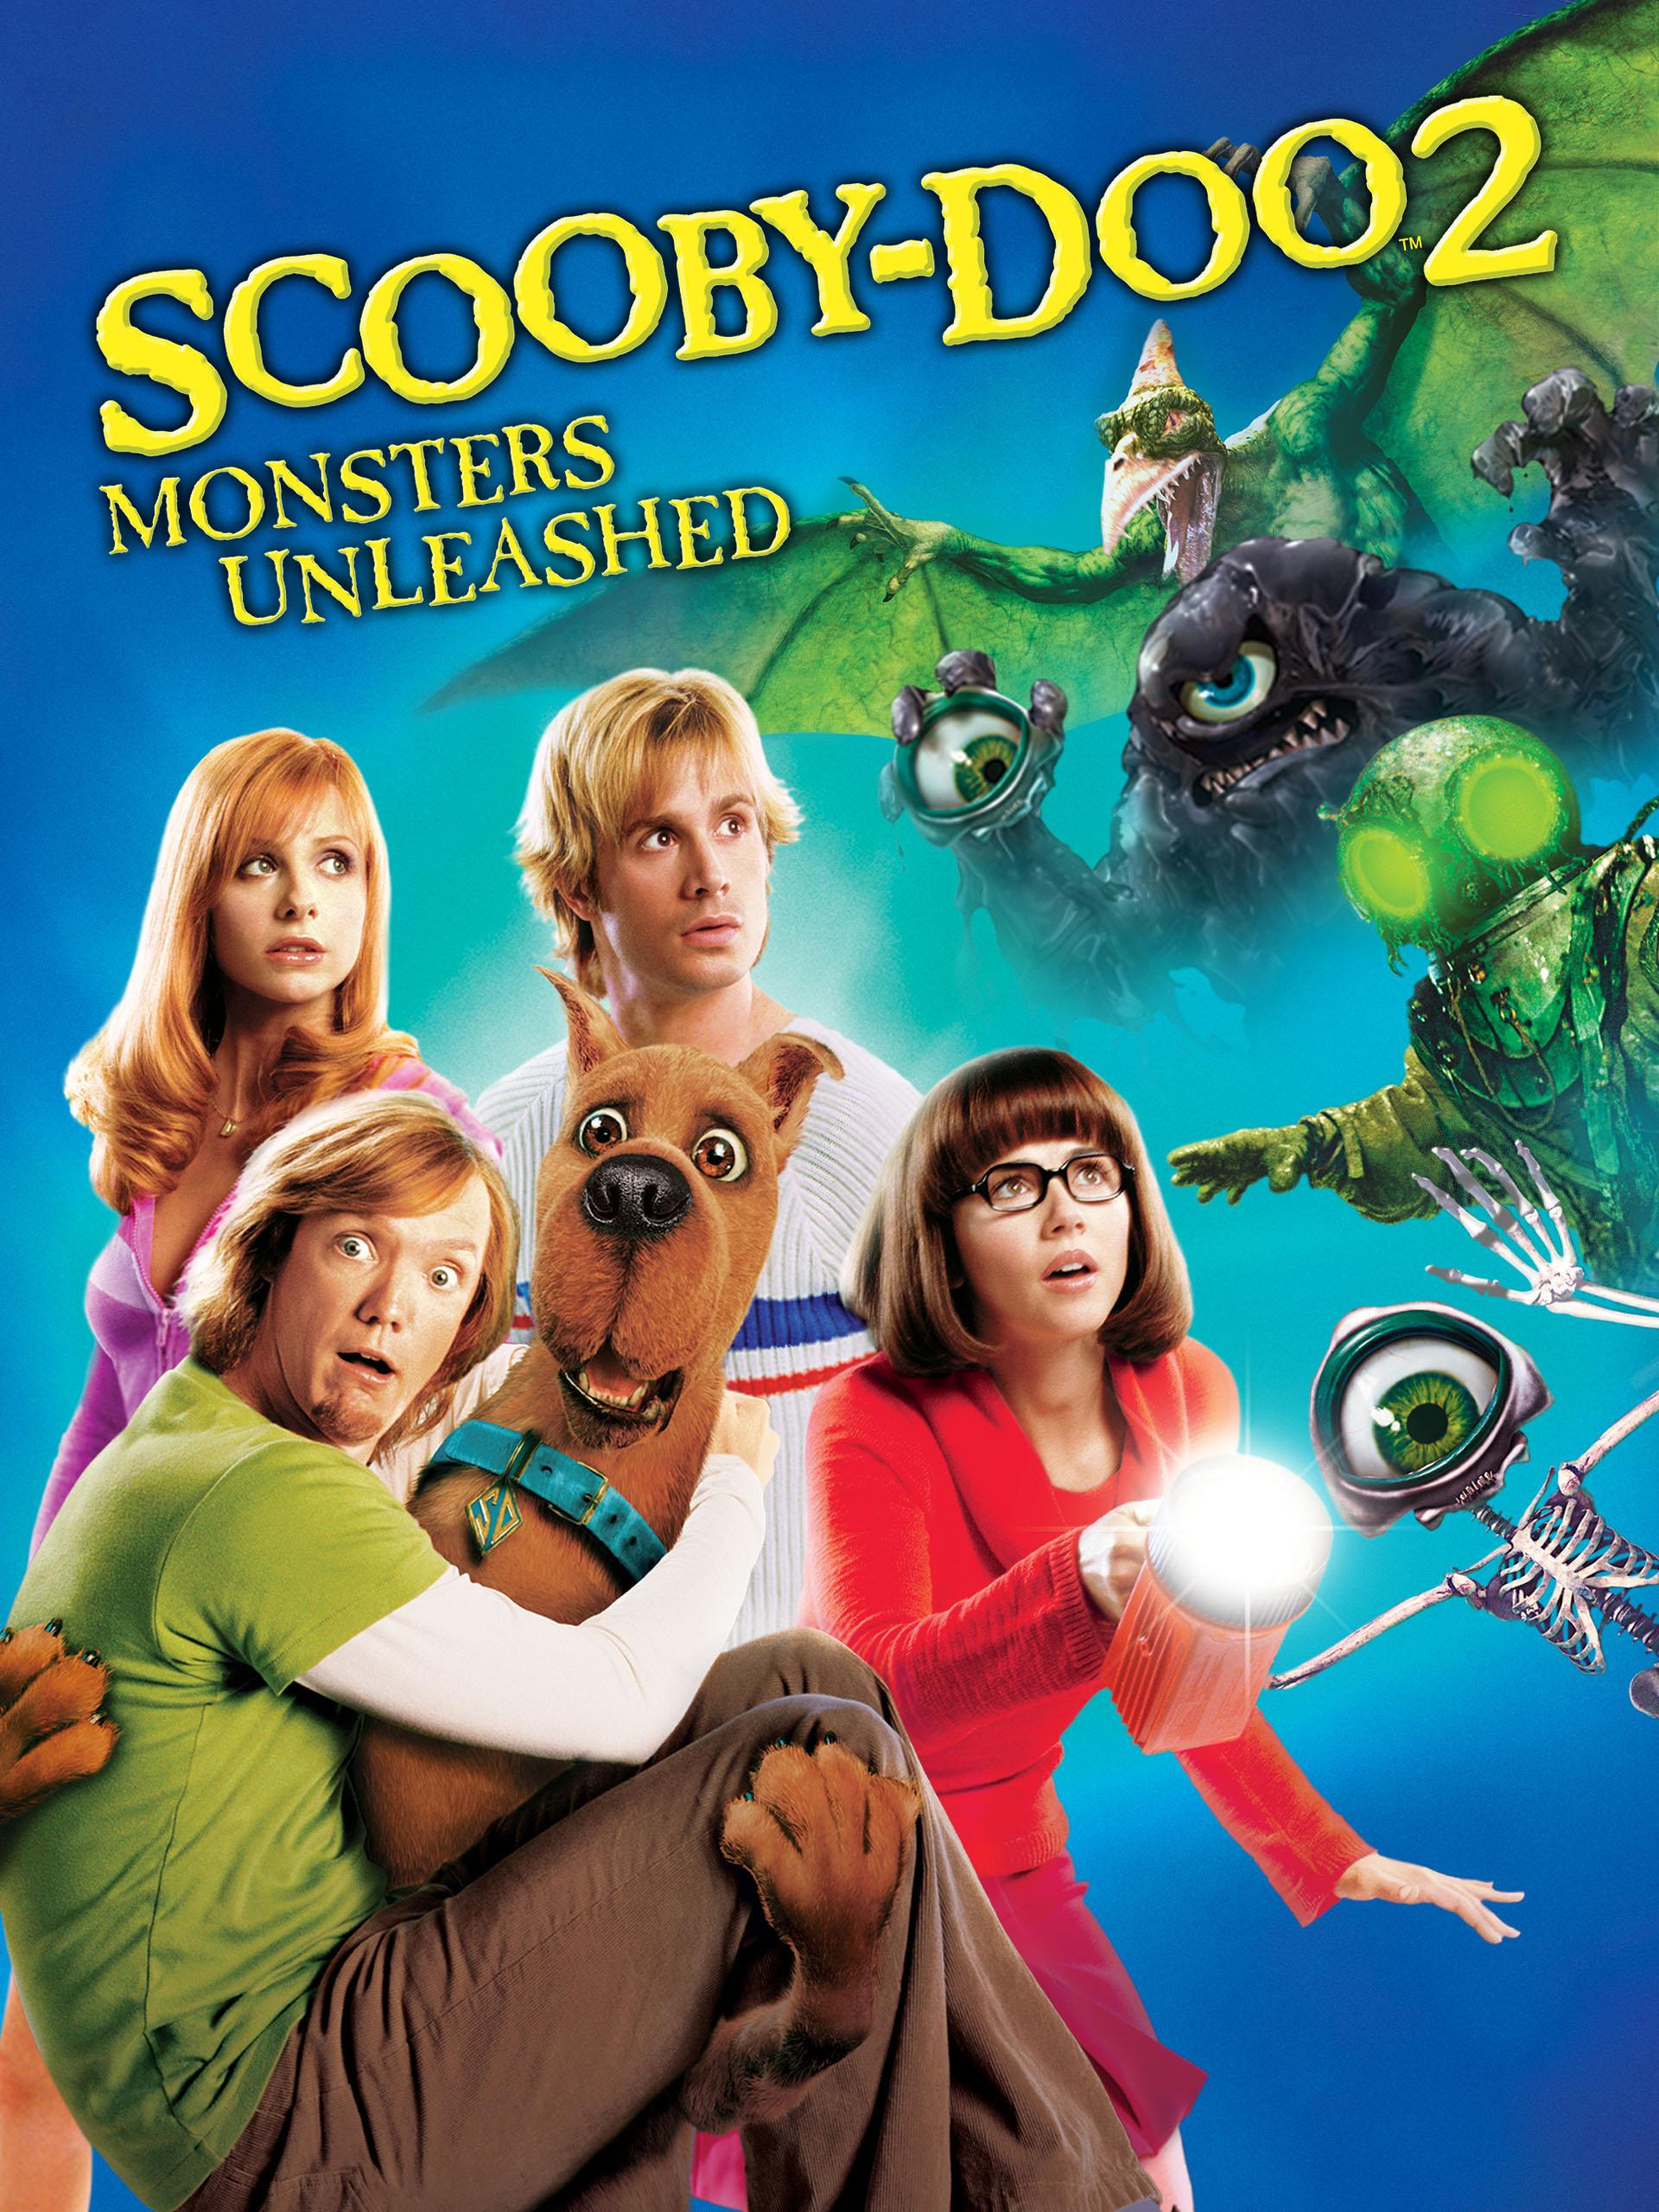 Prime Video: Scooby Doo 2